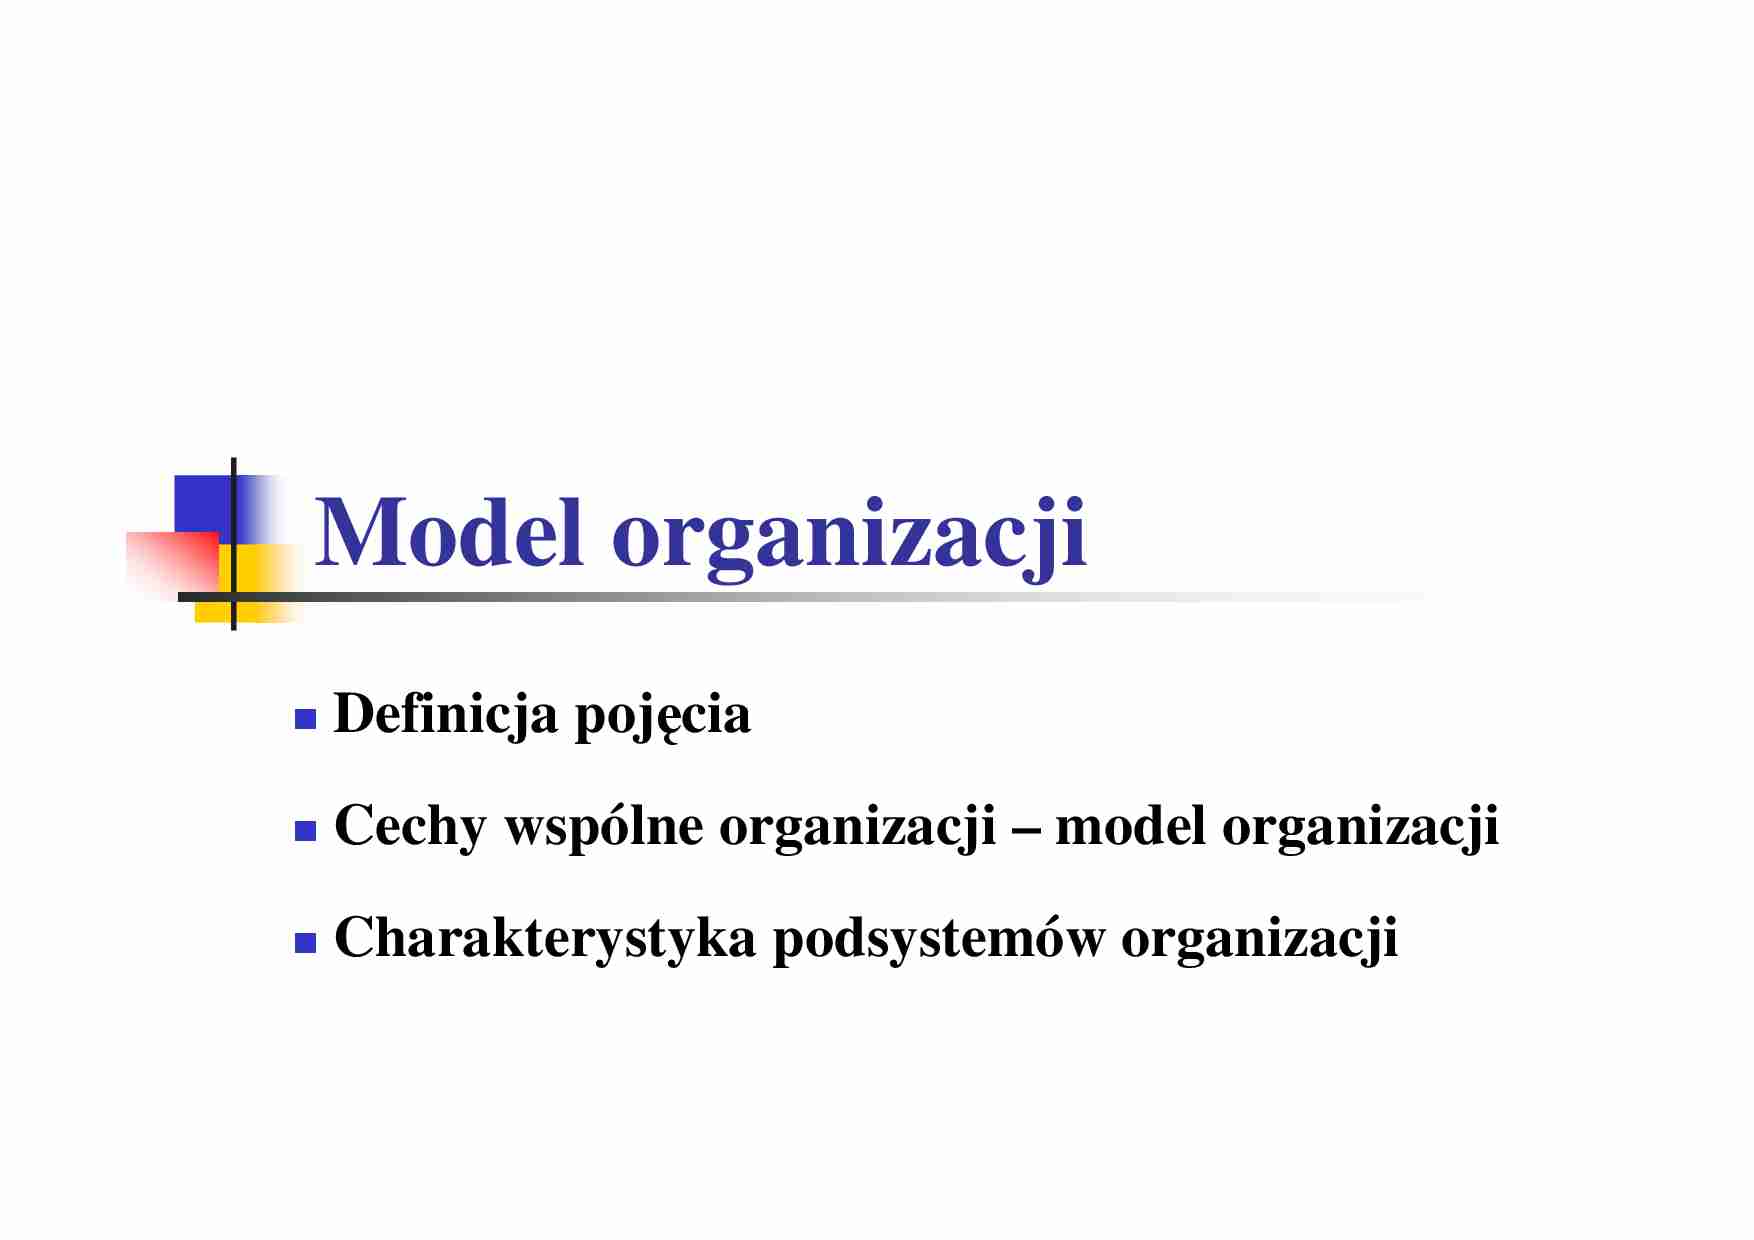 Model organizacji- definicja pojęcia - strona 1